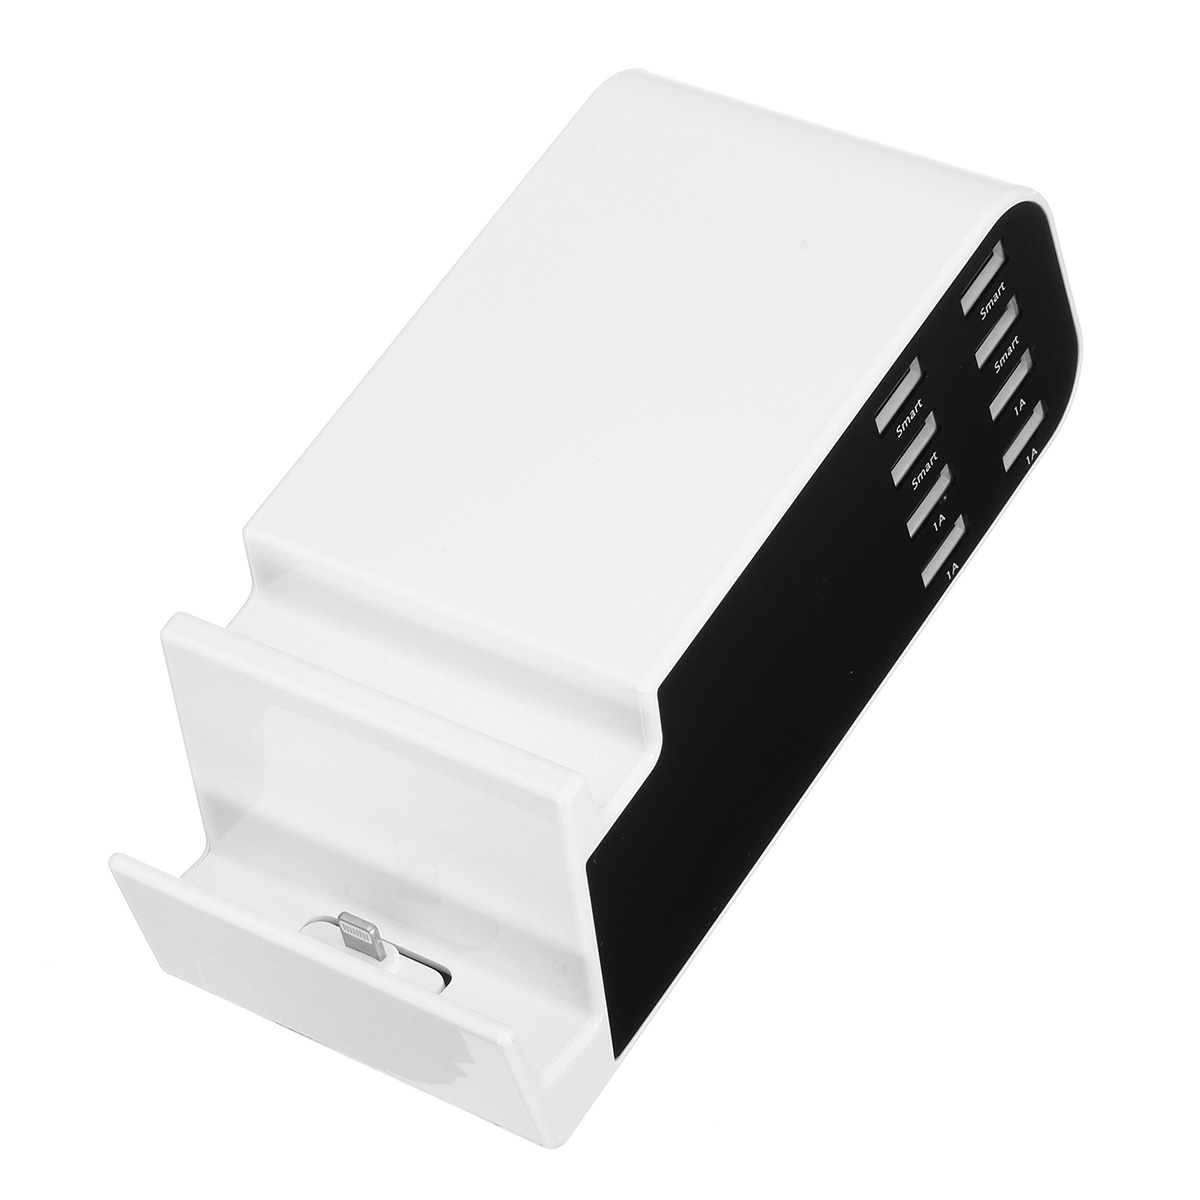 AC100-240V-8-Ports-USB-Charger-Desktop-Charger-Phone-Holder-Charging-Station-1327064-5